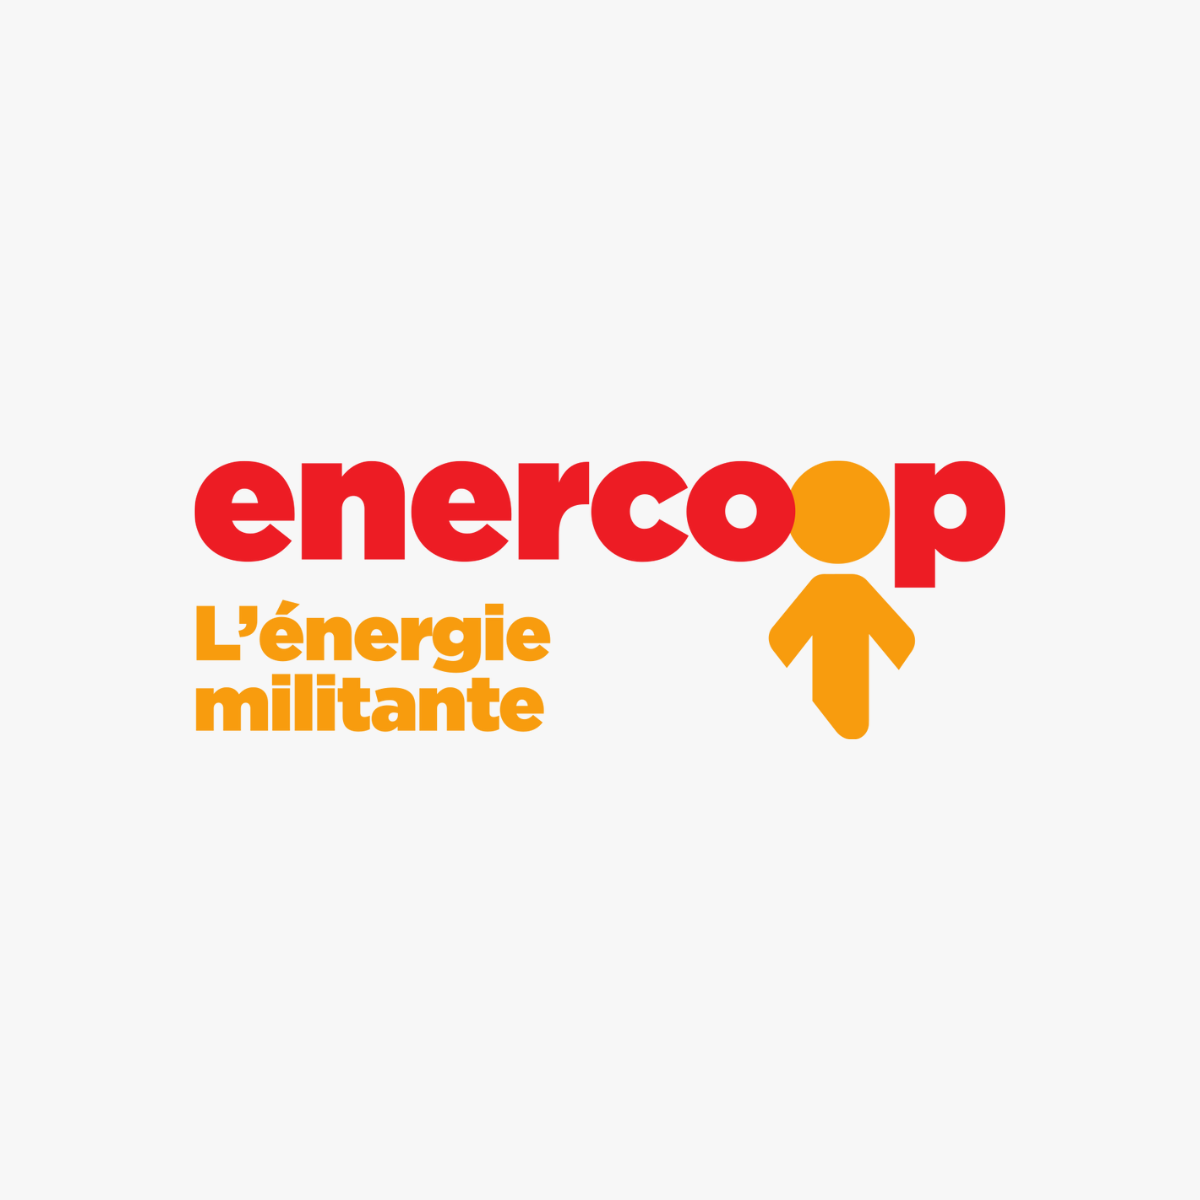 Enercoop, fournisseur d'énergie renouvelable français devient membre de l'AFRC